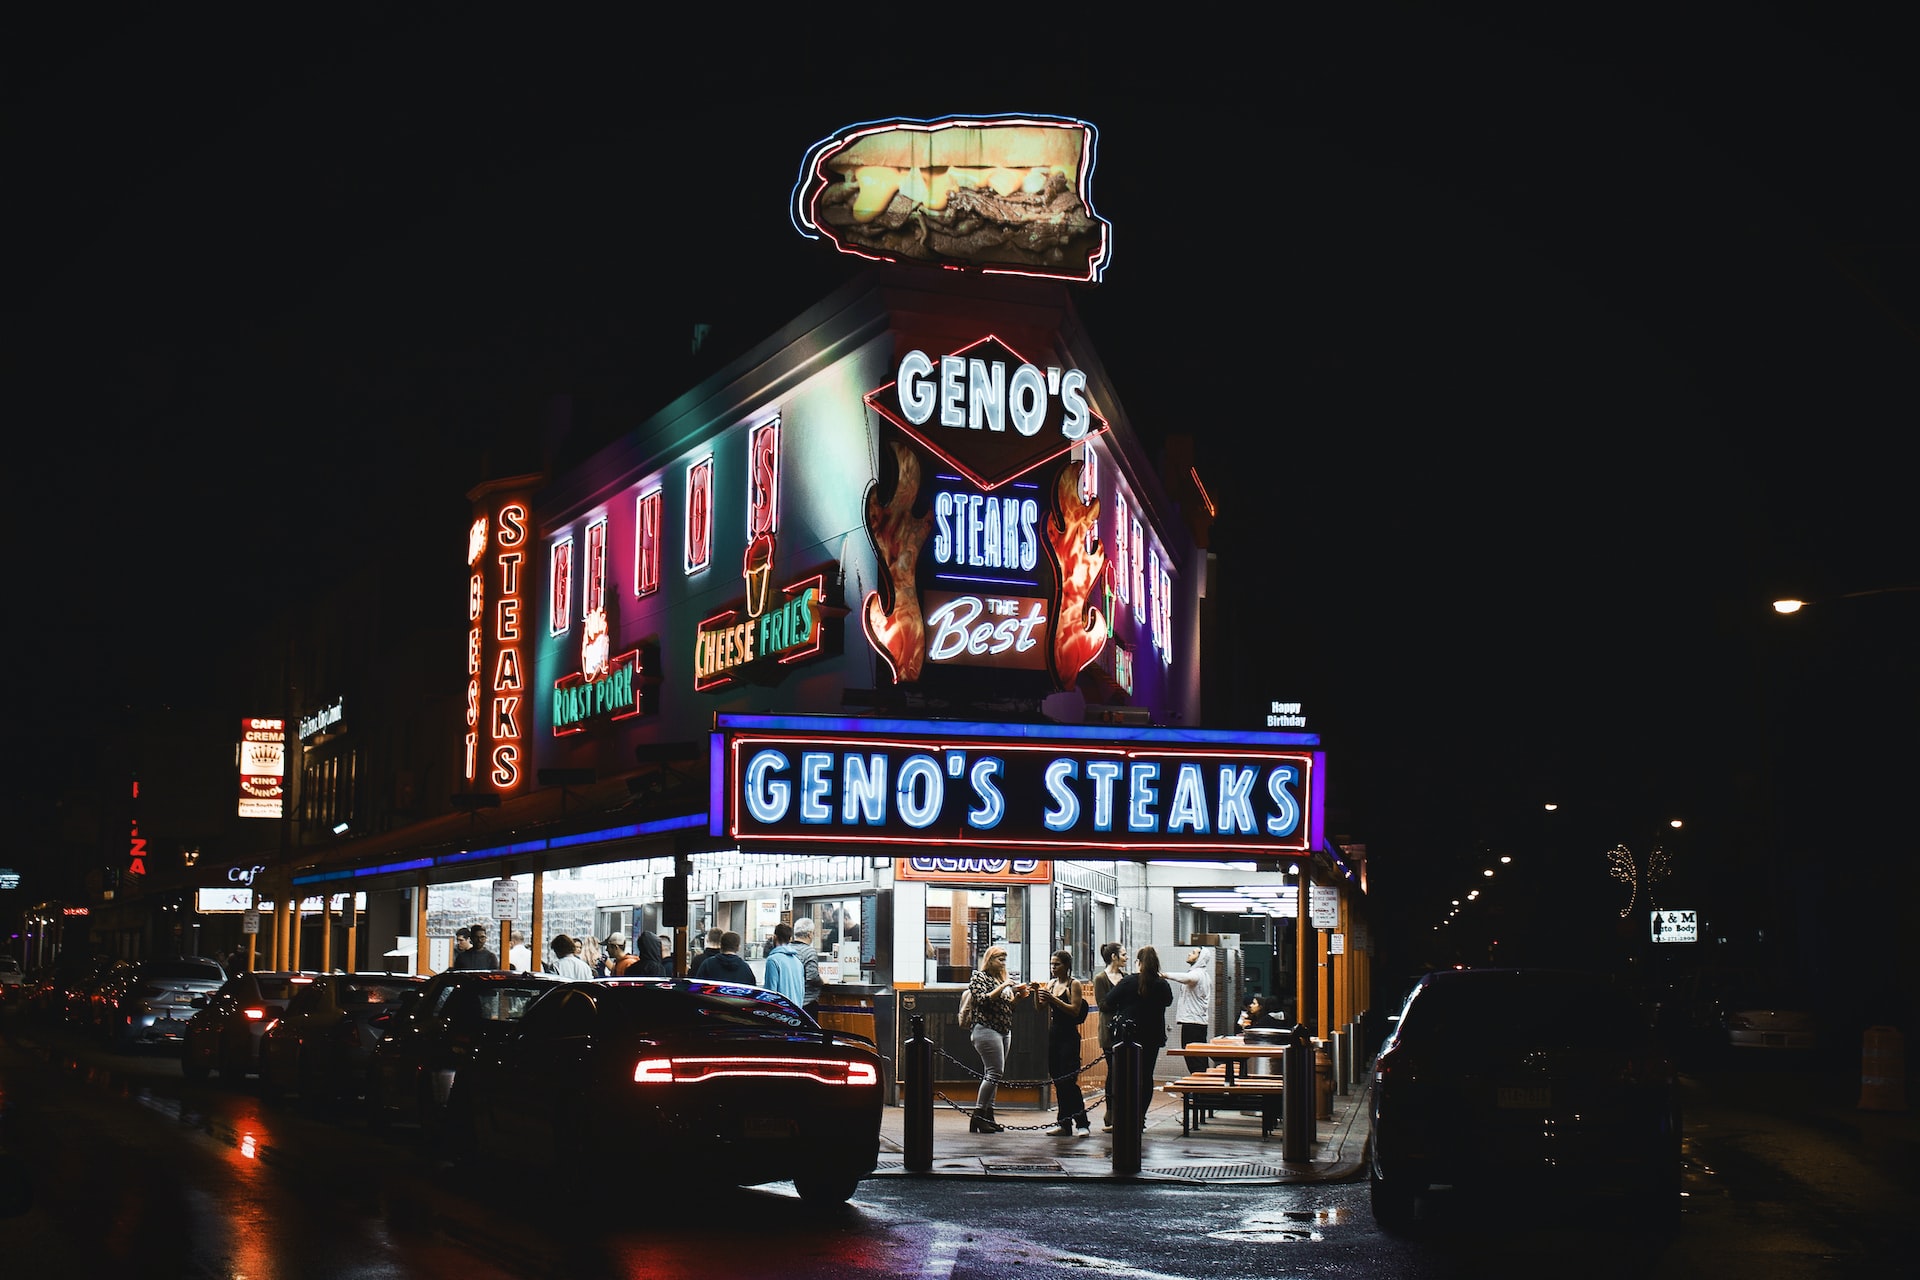 People eating cheesesteaks from Geno's Steaks in Philadelphia.